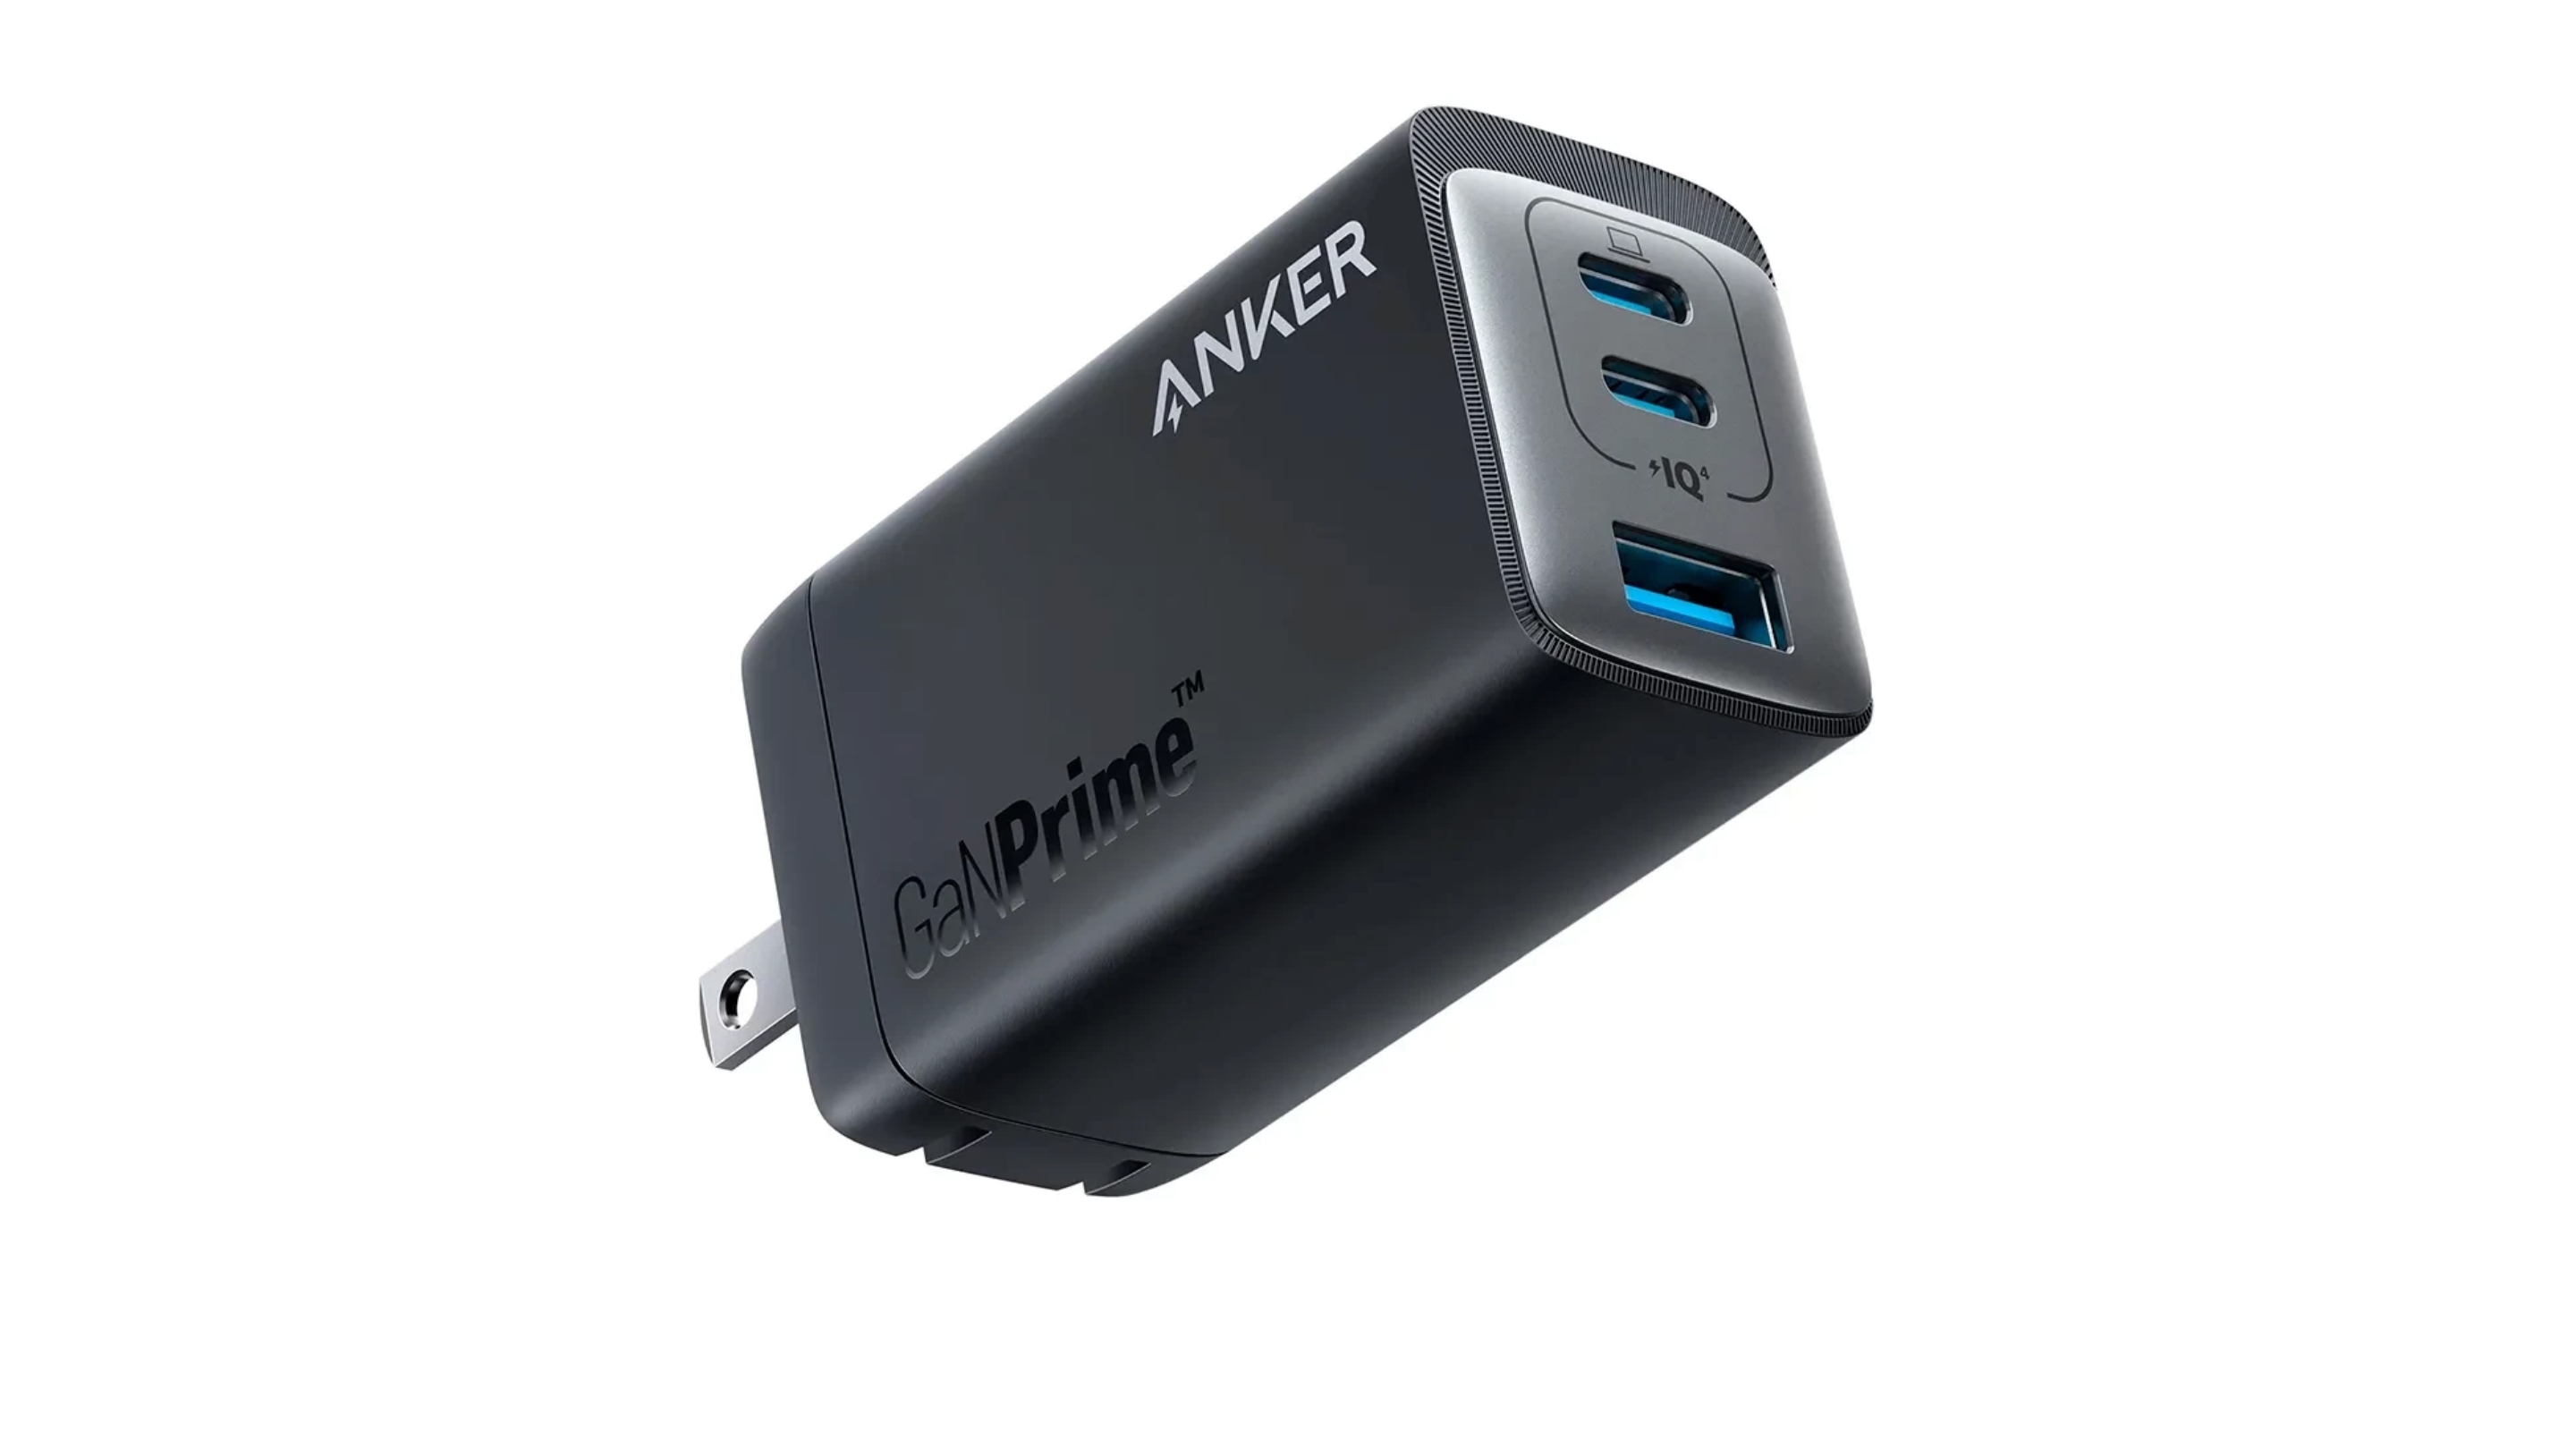 Anker 735 su Amazon: un caricabatterie compatto per smartphone, tablet e laptop con 65W di potenza e tre porte USB a 21 dollari di sconto